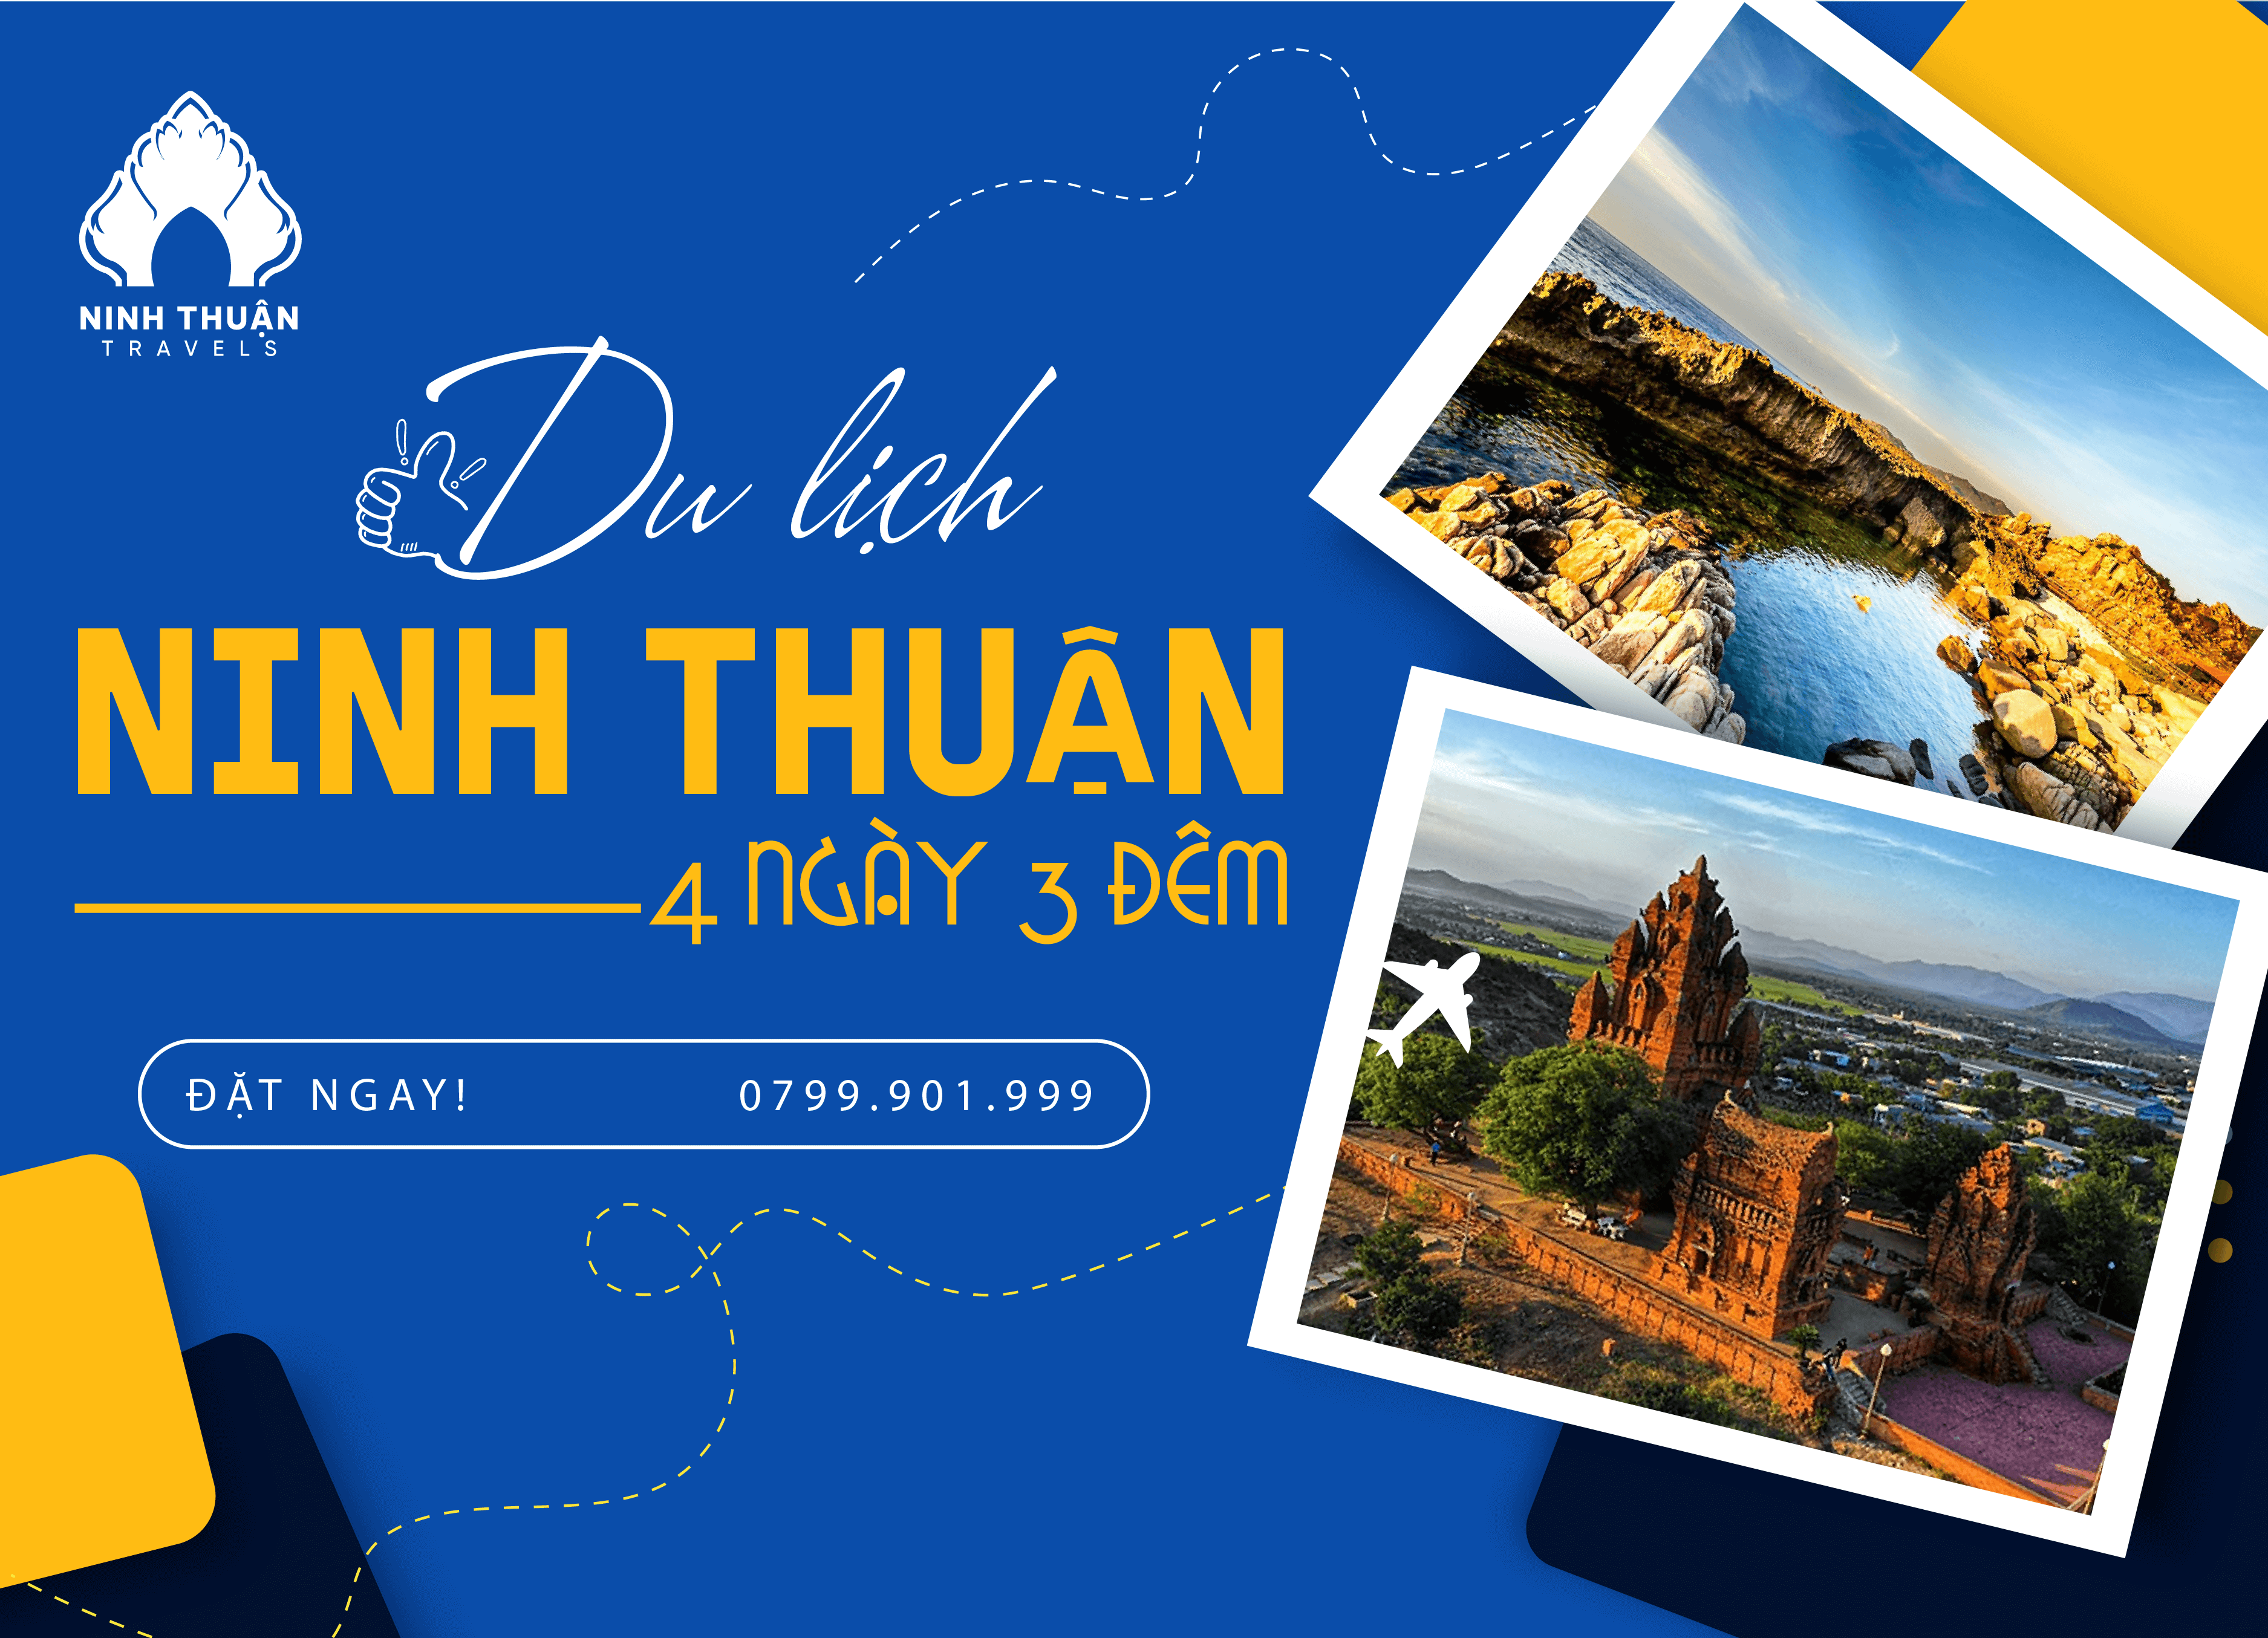 Tour Ninh Thuận 4 ngày 3 đêm:Giá Rẻ, Trọn Gói, Ưu Đãi 2023